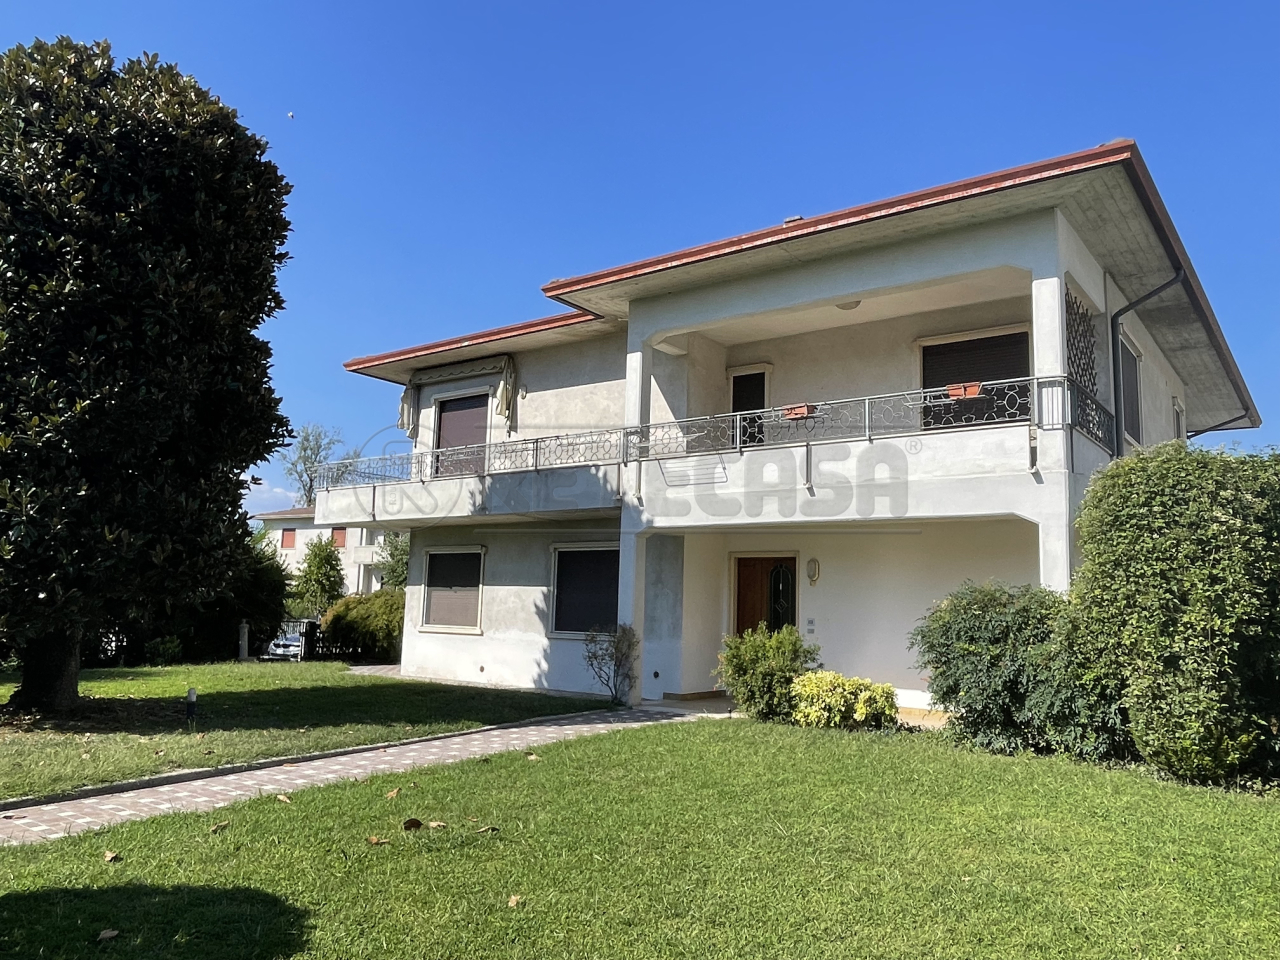 Villa in vendita a Bressanvido, 11 locali, prezzo € 298.000 | PortaleAgenzieImmobiliari.it